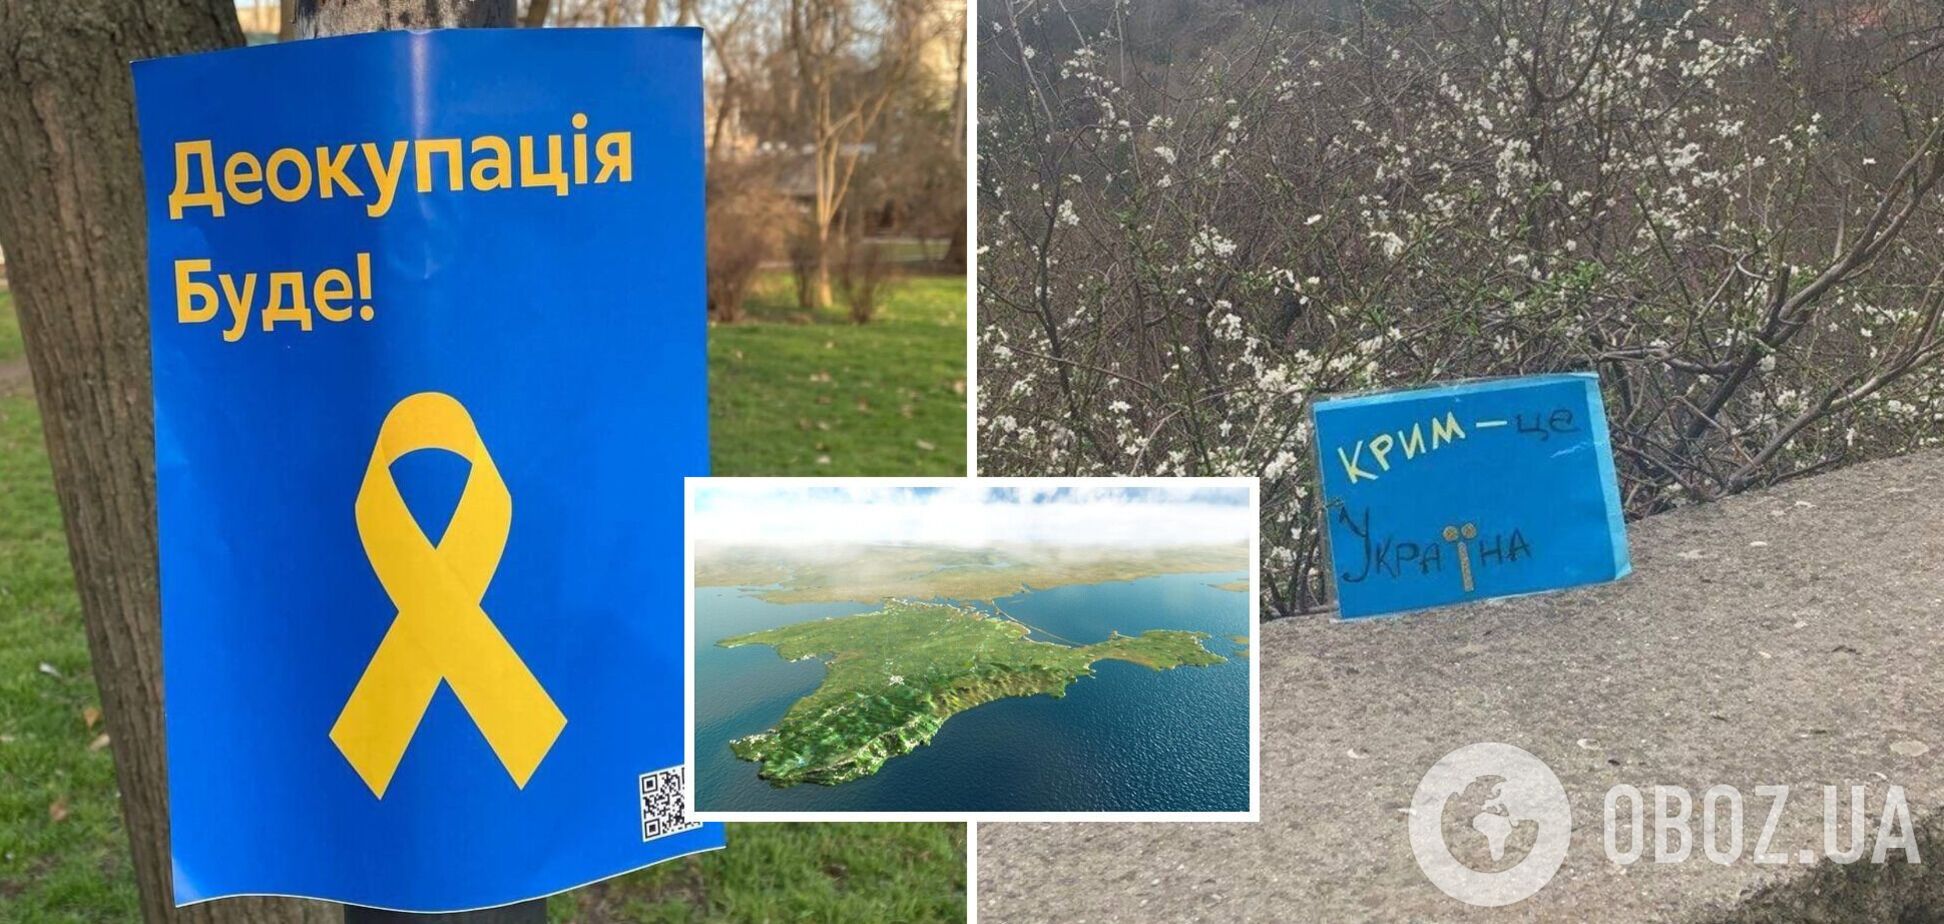 'Придет время – виновные ответят': в Крыму патриоты устроили смелую акцию и сделали предупреждение оккупантам. Фото и видео